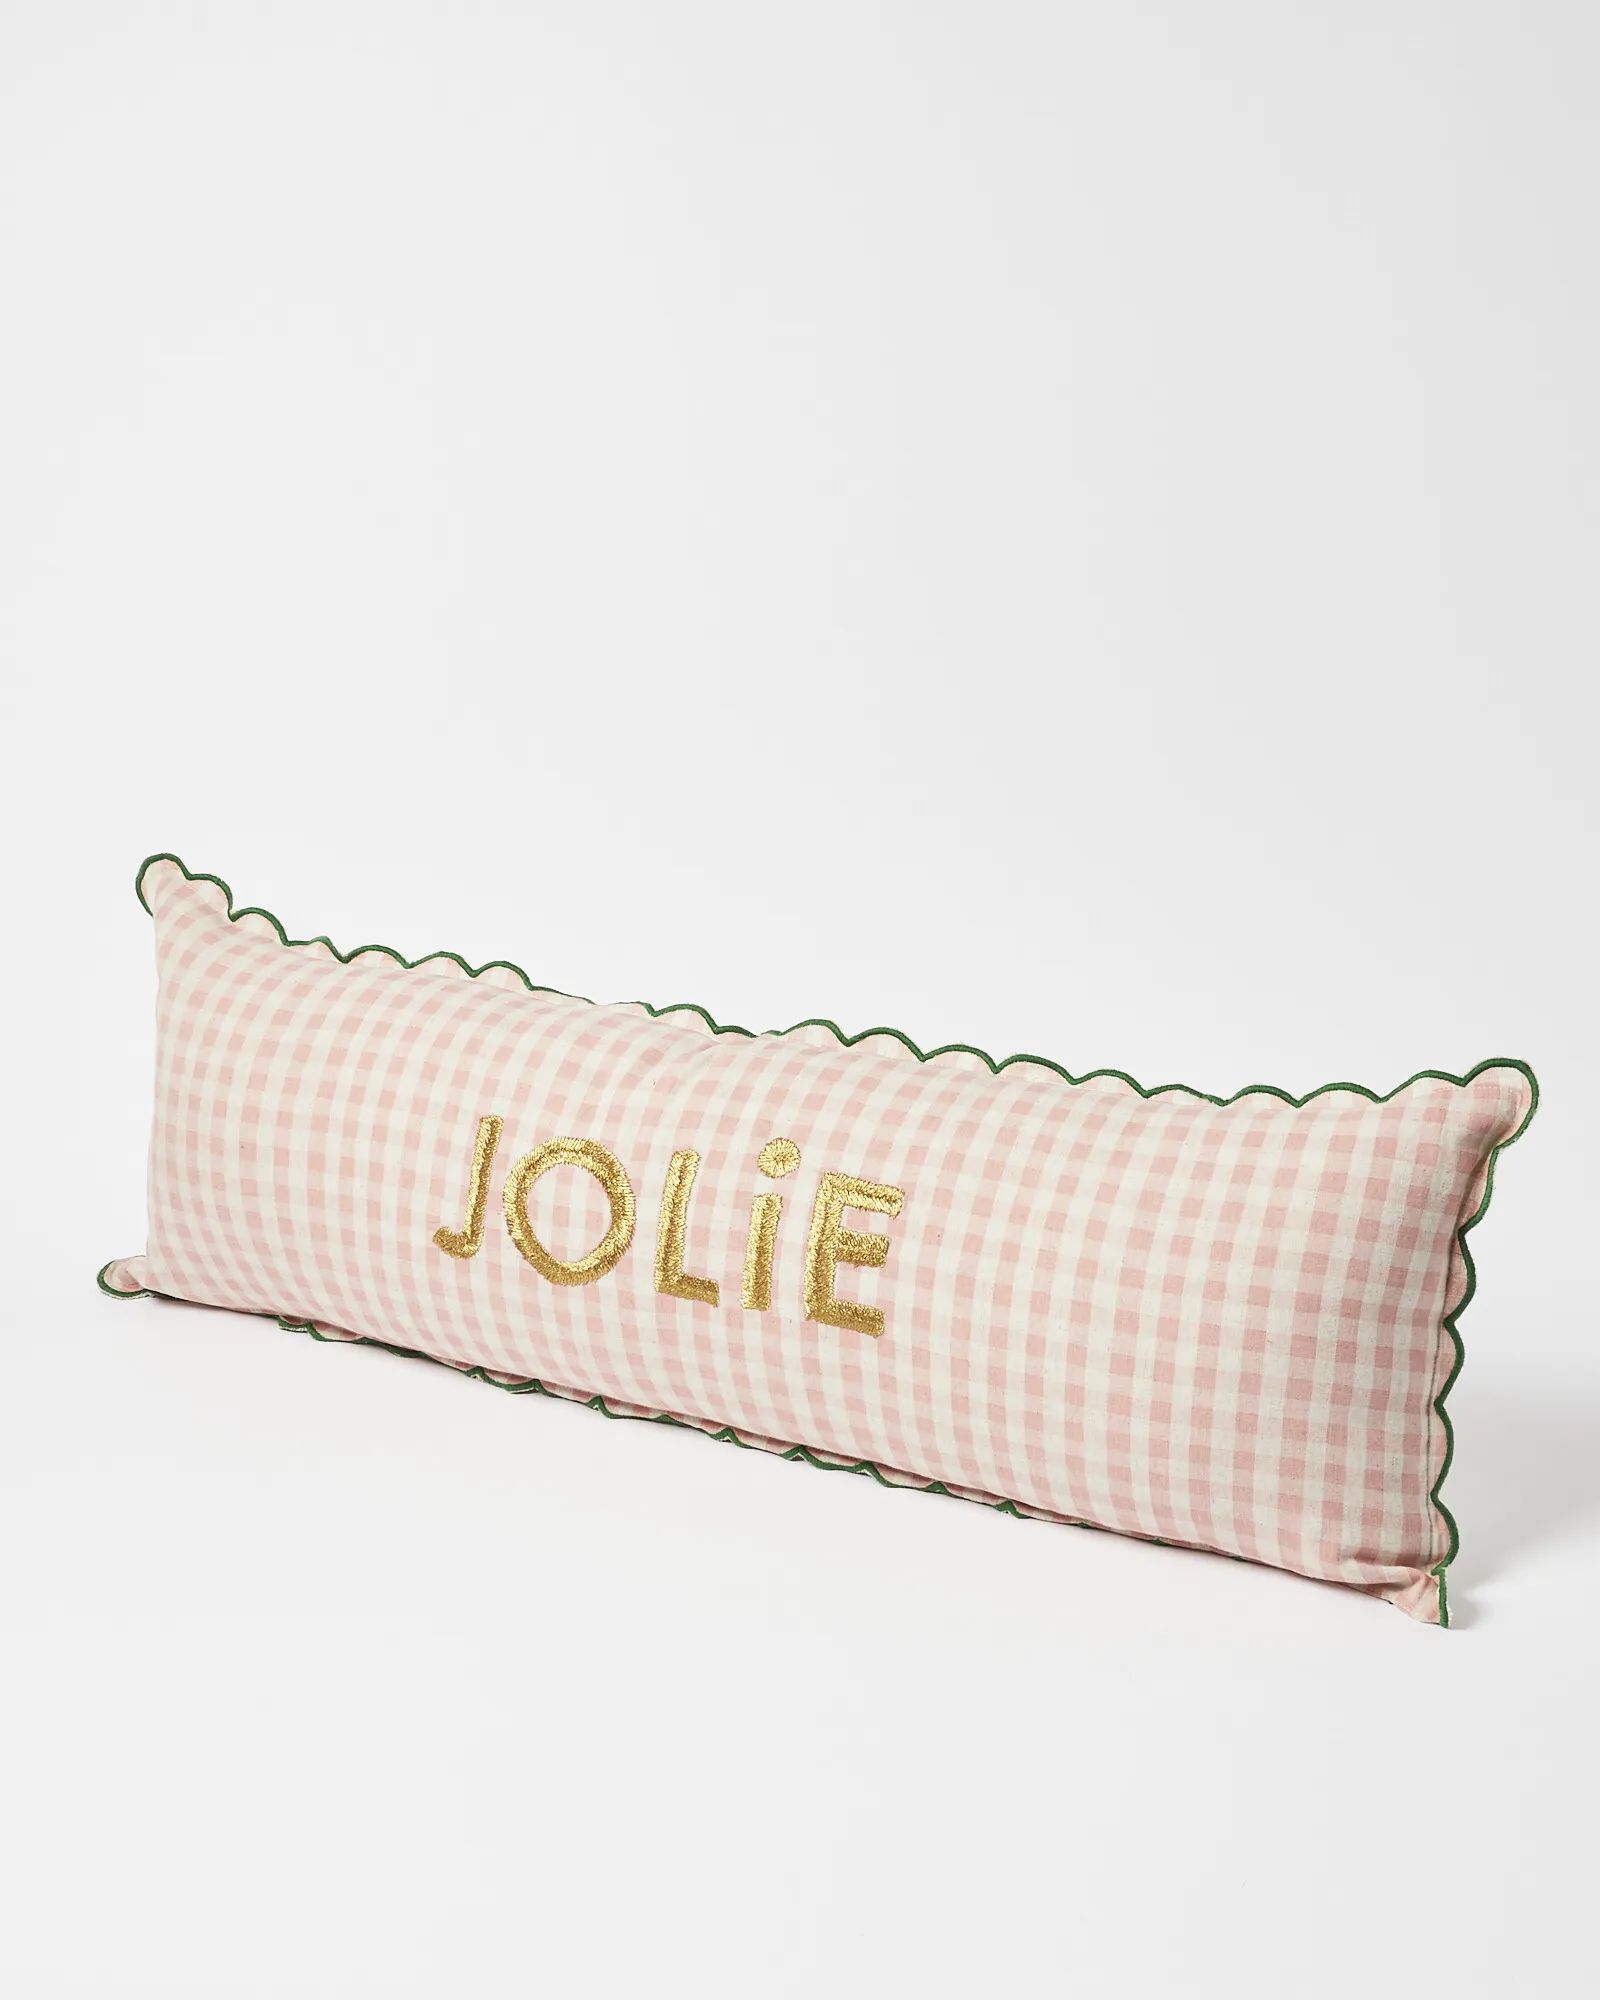 Jolie Embroidered Pink Gingham Bolster Cushion | Oliver Bonas | Oliver Bonas (Global)